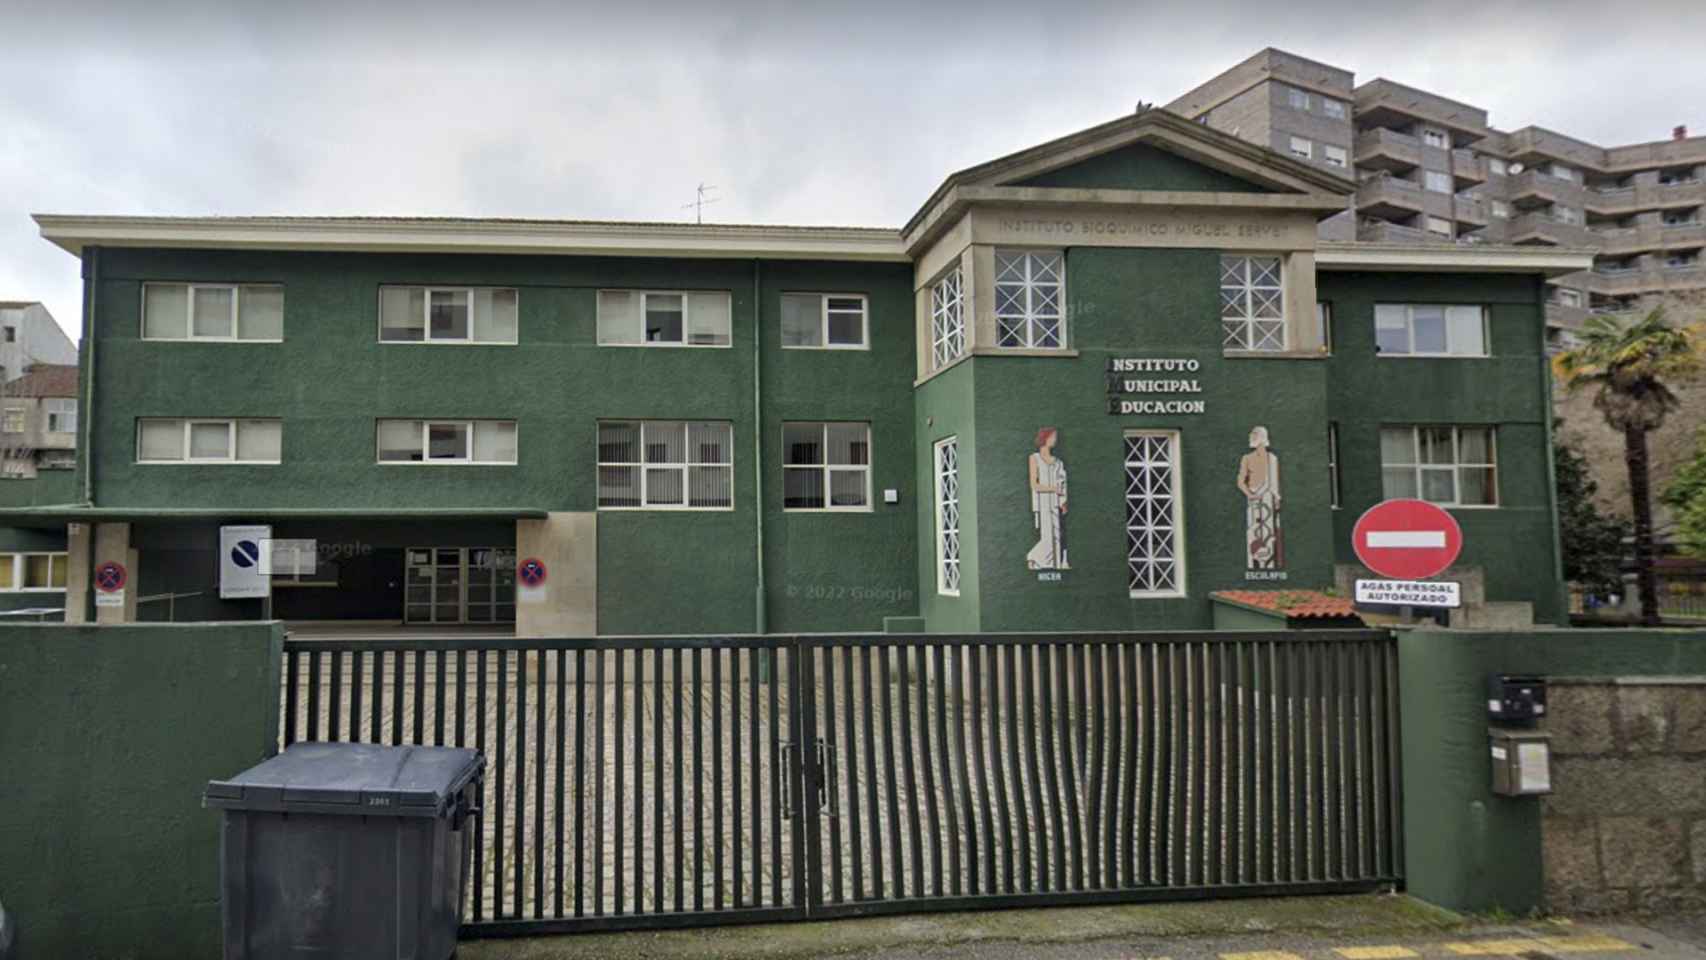 Instalaciones del Instituto Municipal de Educación que albergarán la nueva escuela municipal infantil.